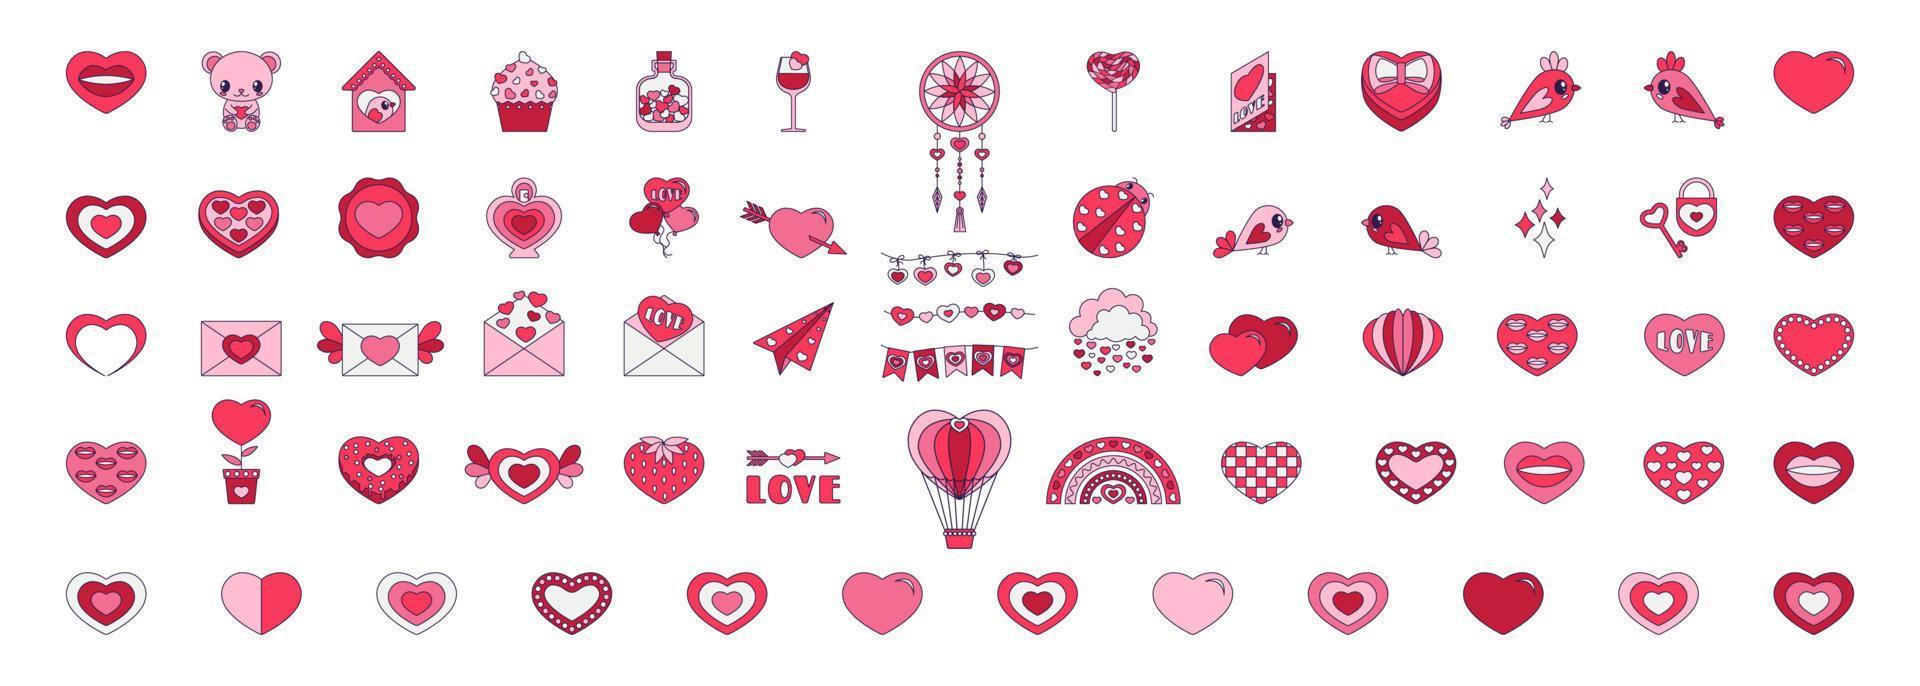 Retro-Valentinstag-Reihe von Symbolen. Liebessymbole im angesagten Pop-Line-Art-Stil. die figur aus herz, regenbogen, schloss, ballon in zartrosa, roter und korallenfarbener farbe. vektorillustration isoliert vektor